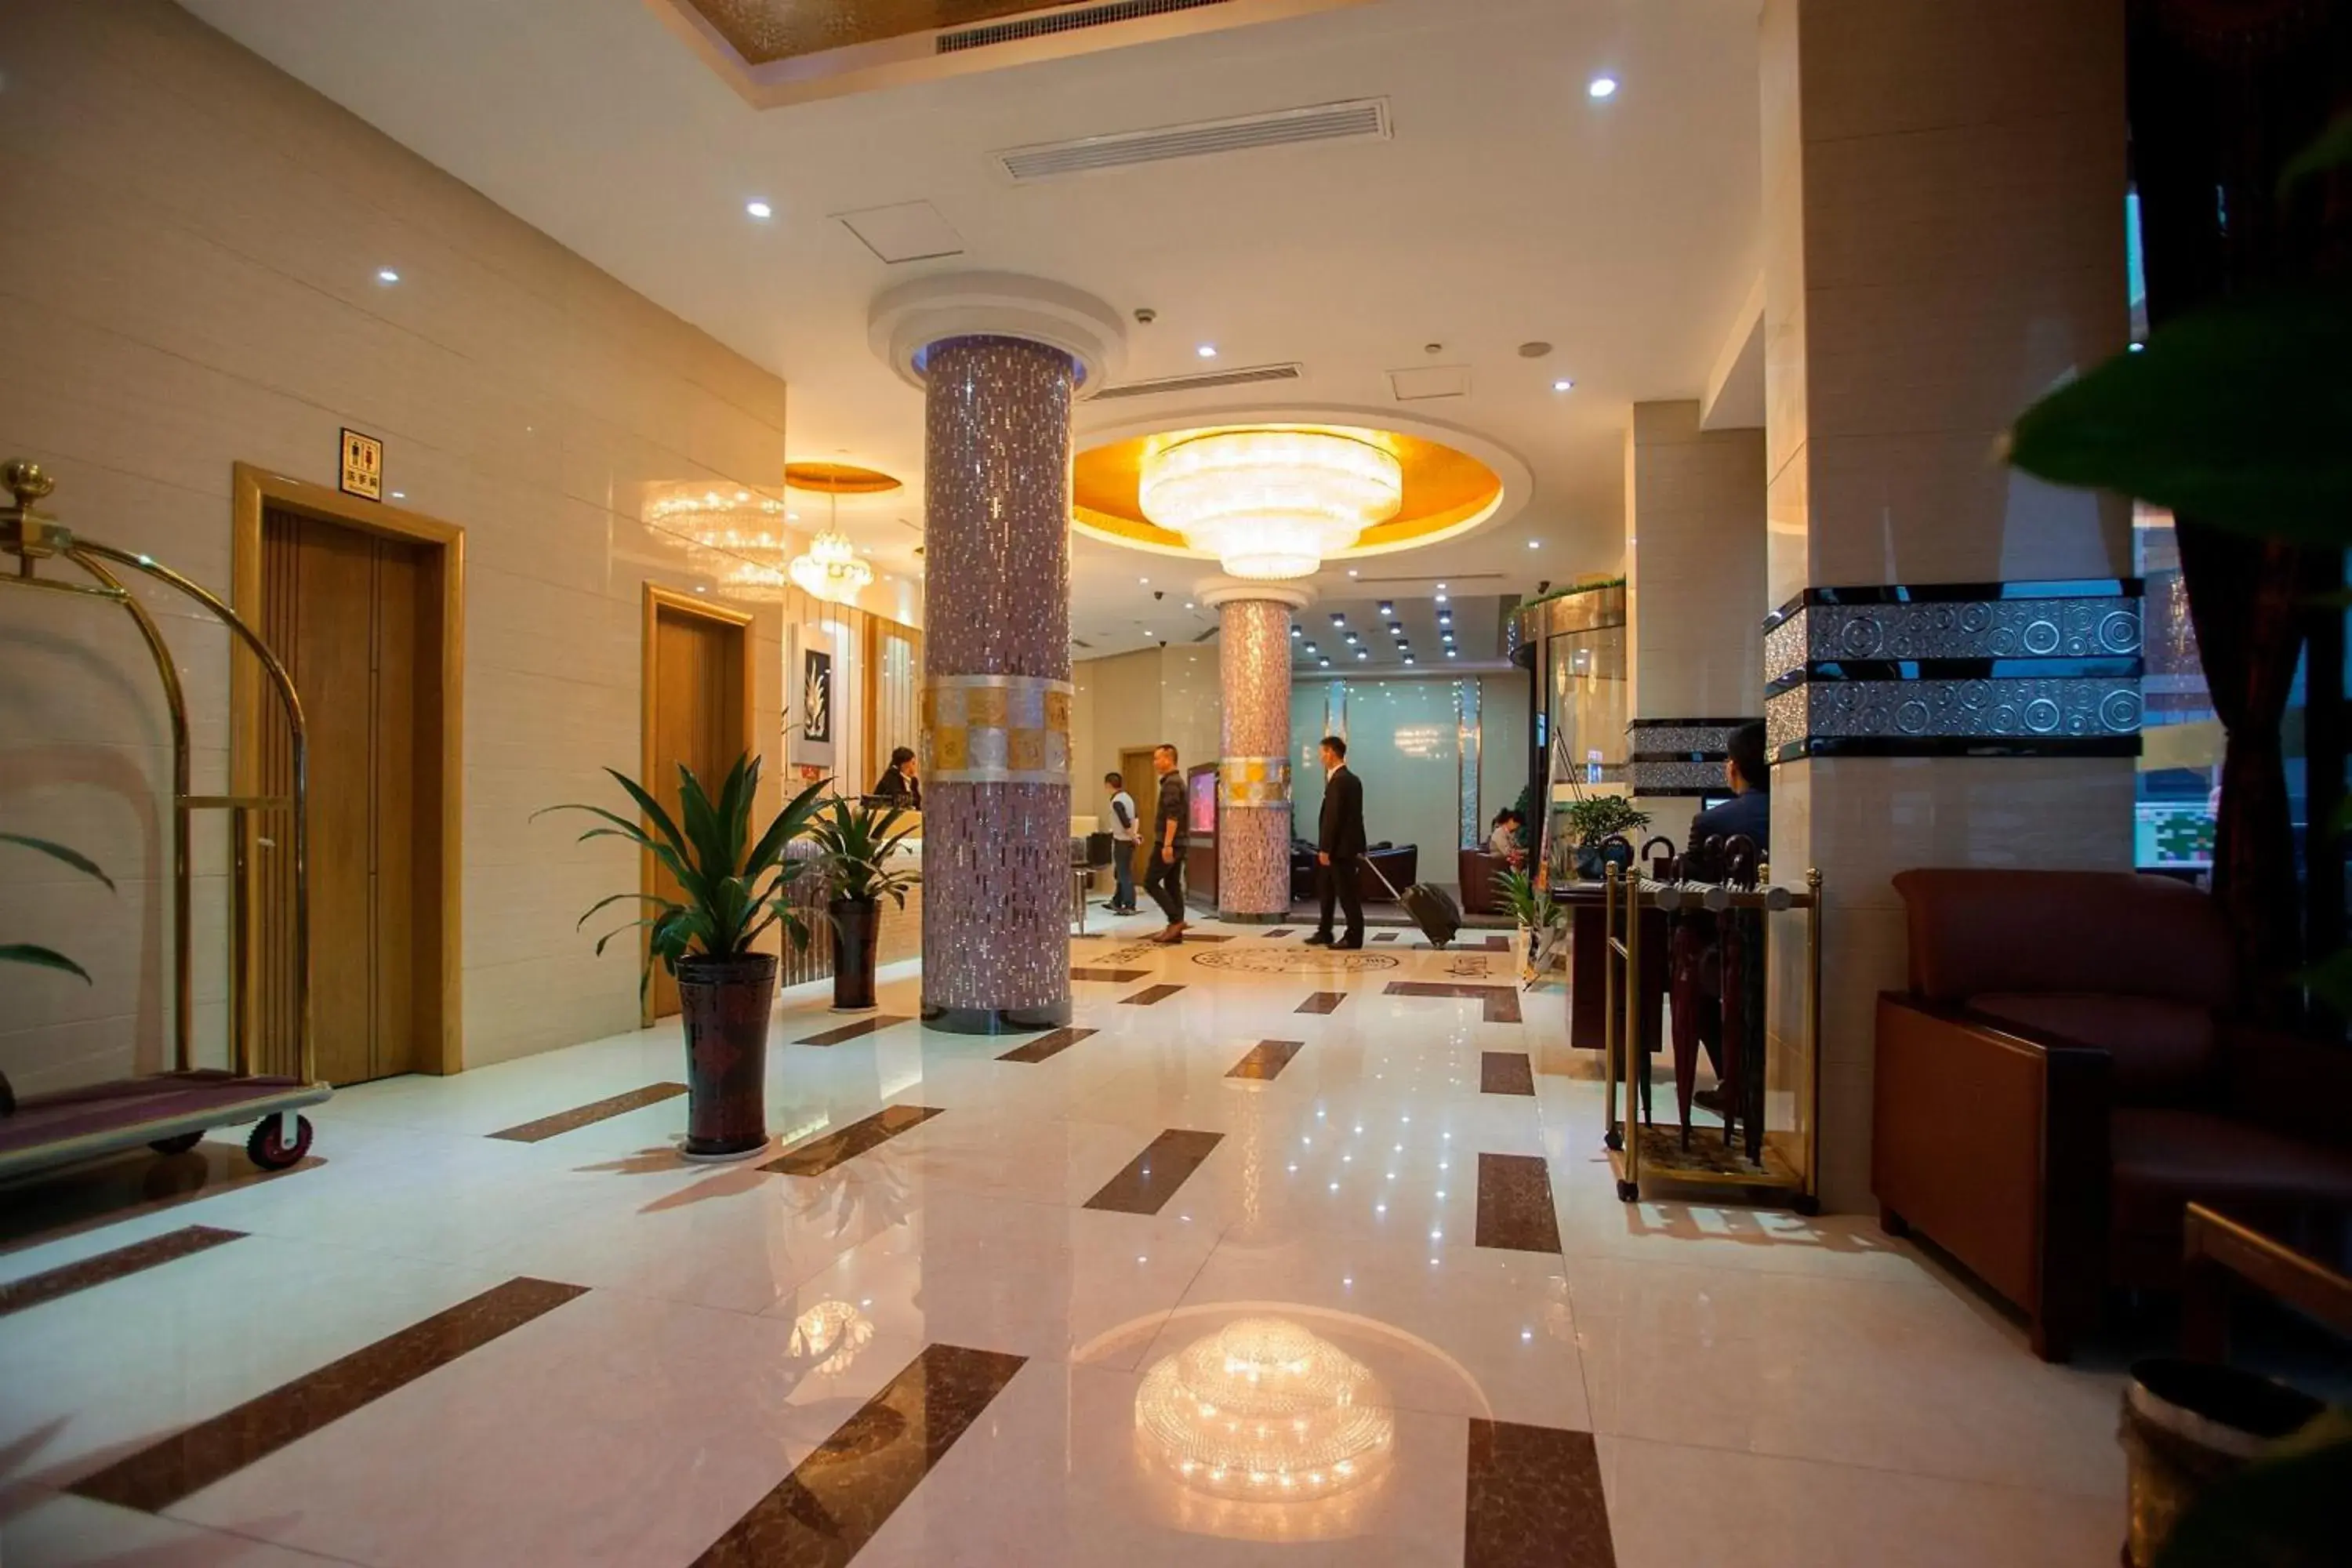 Lobby or reception in Yiwu Luckbear Hotel